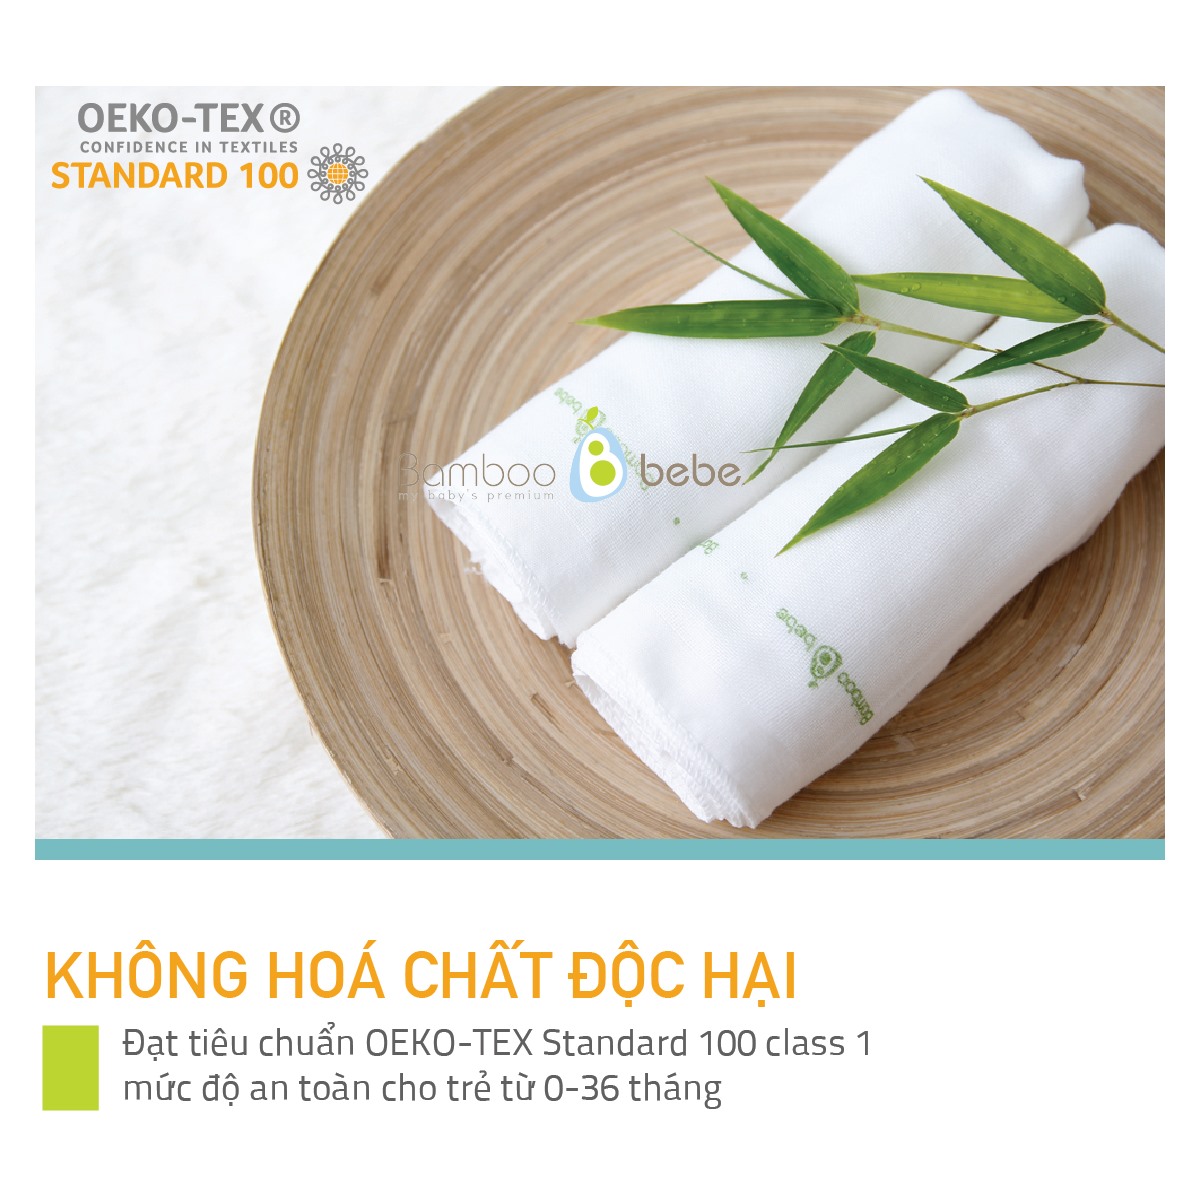 Sản phẩm Bamboo đều đạt chứng nhận Oeko-Tex Standard 100 an toàn tuyệt đối với làn da và sức khoẻ của trẻ em